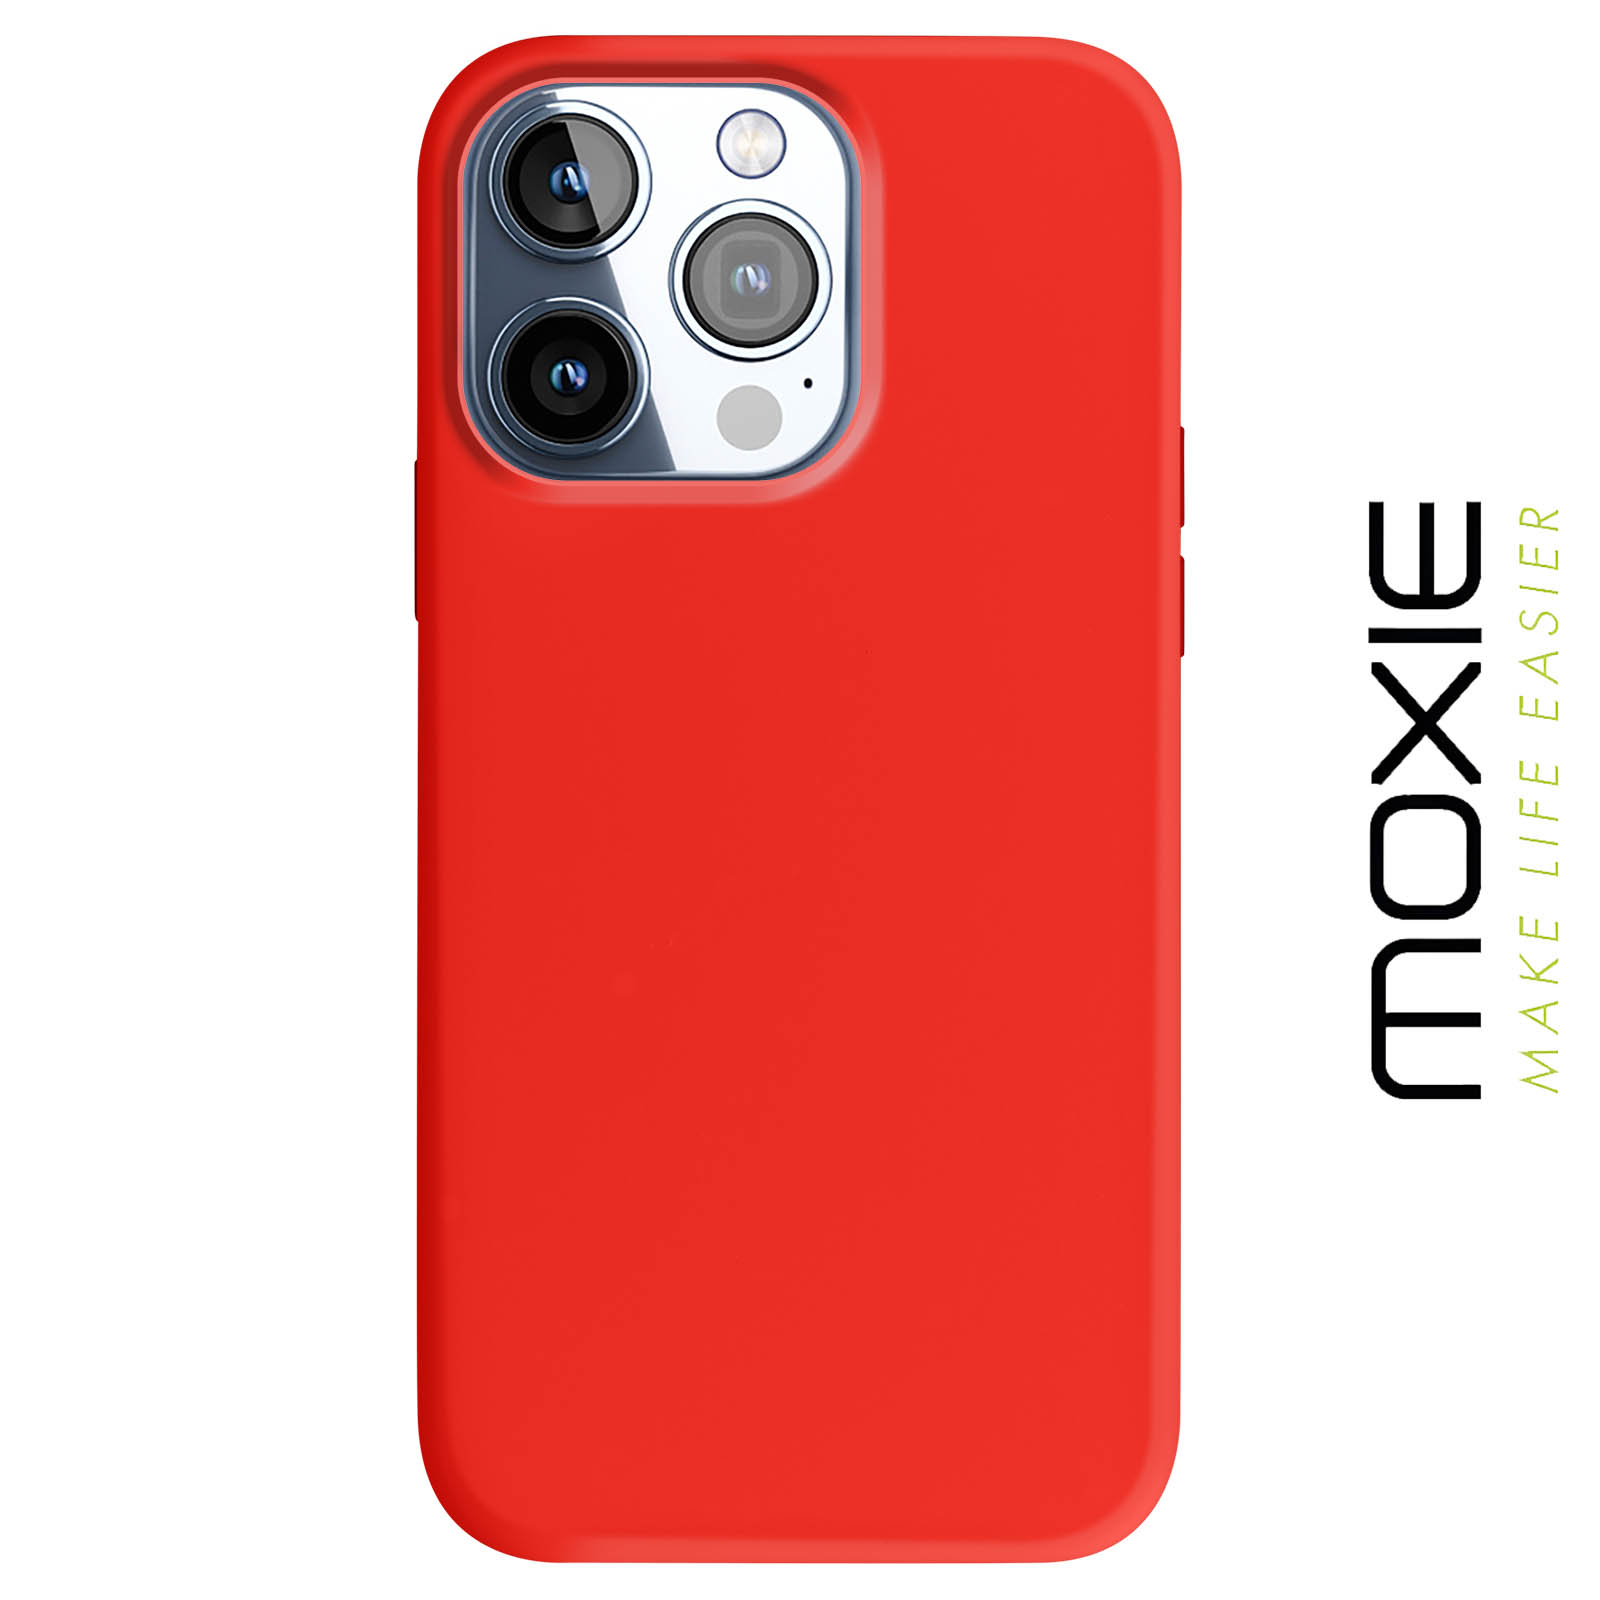 Moxie Coque iPhone 13 Pro [BeFluo] Coque Silicone Fine et Légère